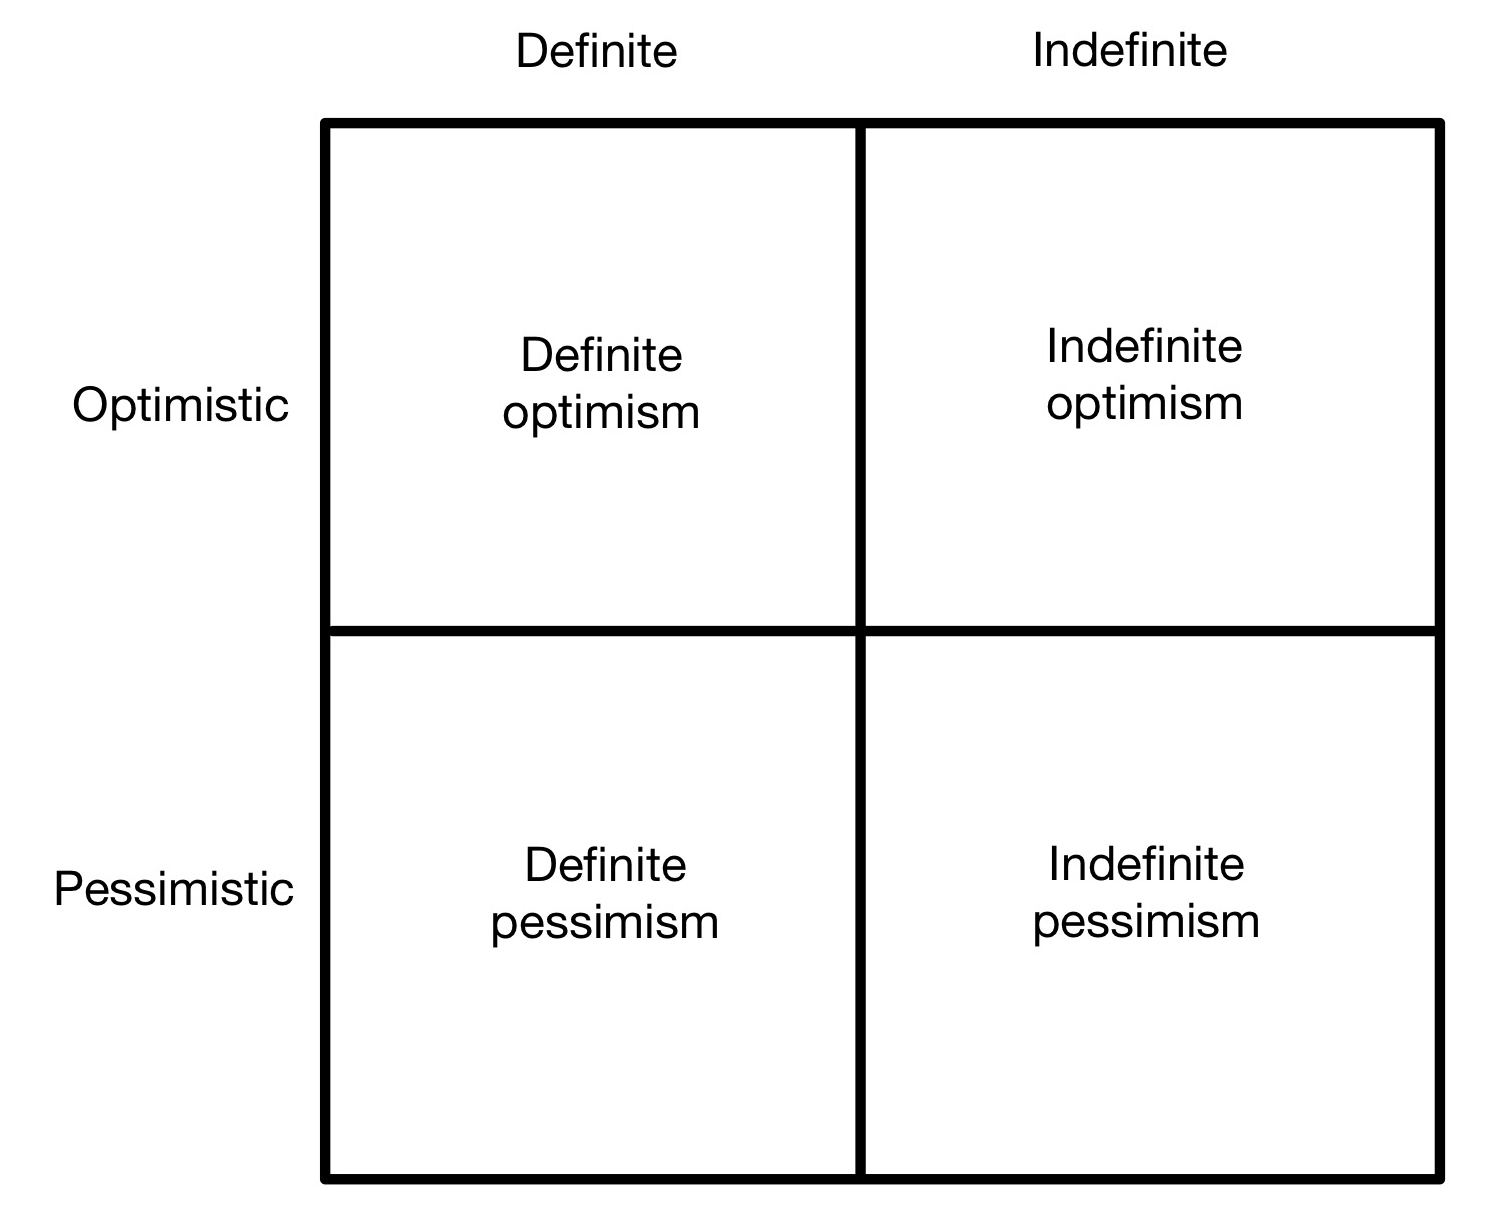 Definite versus indefinite thinking quadrants